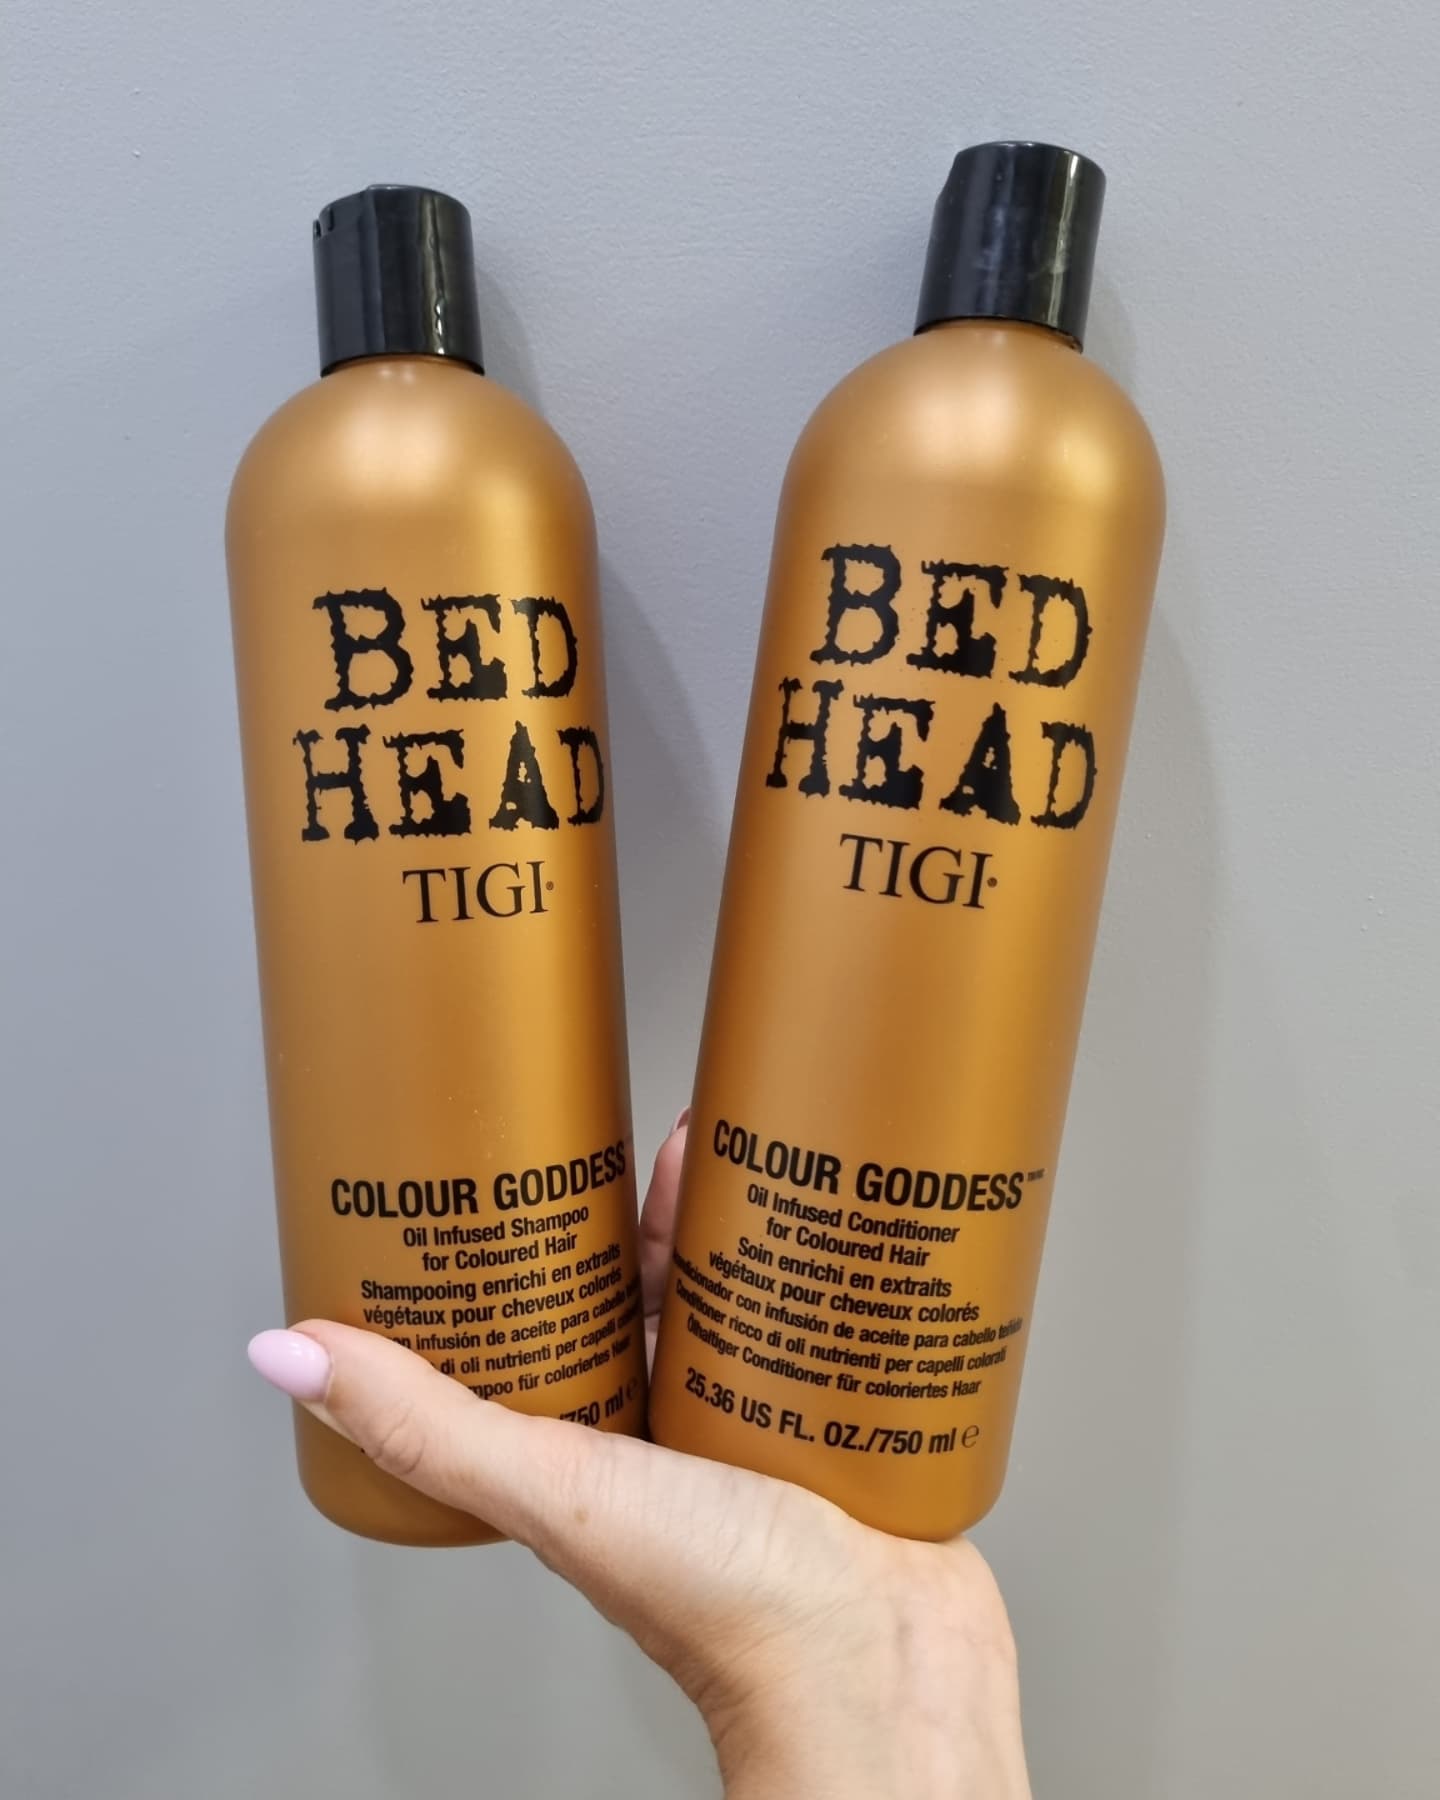 Tigi pro radiant colour кондиционер для окрашенных волос